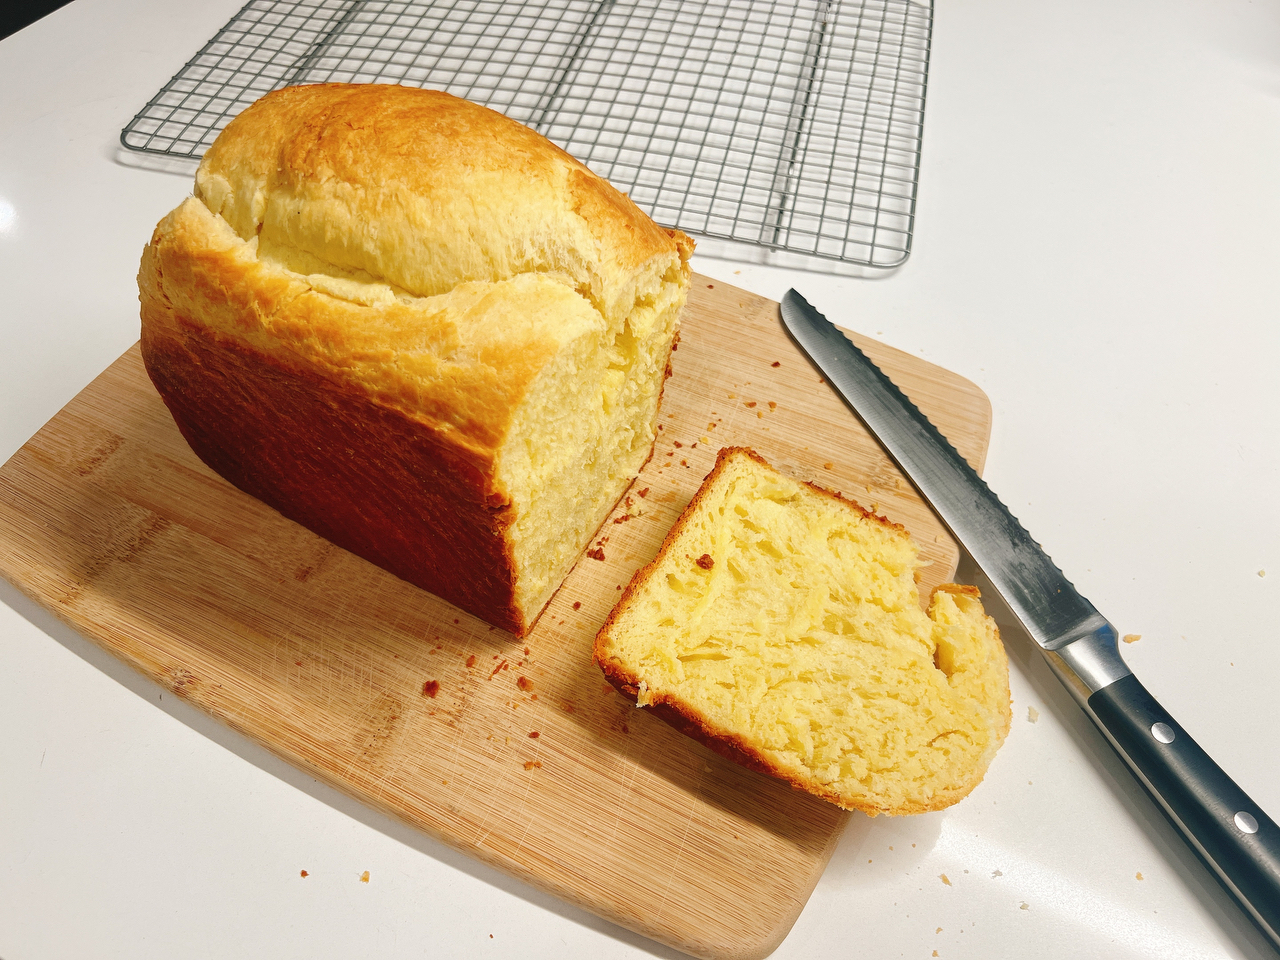 吃过这个黄油面包Brioche，你很难再爱上街边蛋糕店的面包店